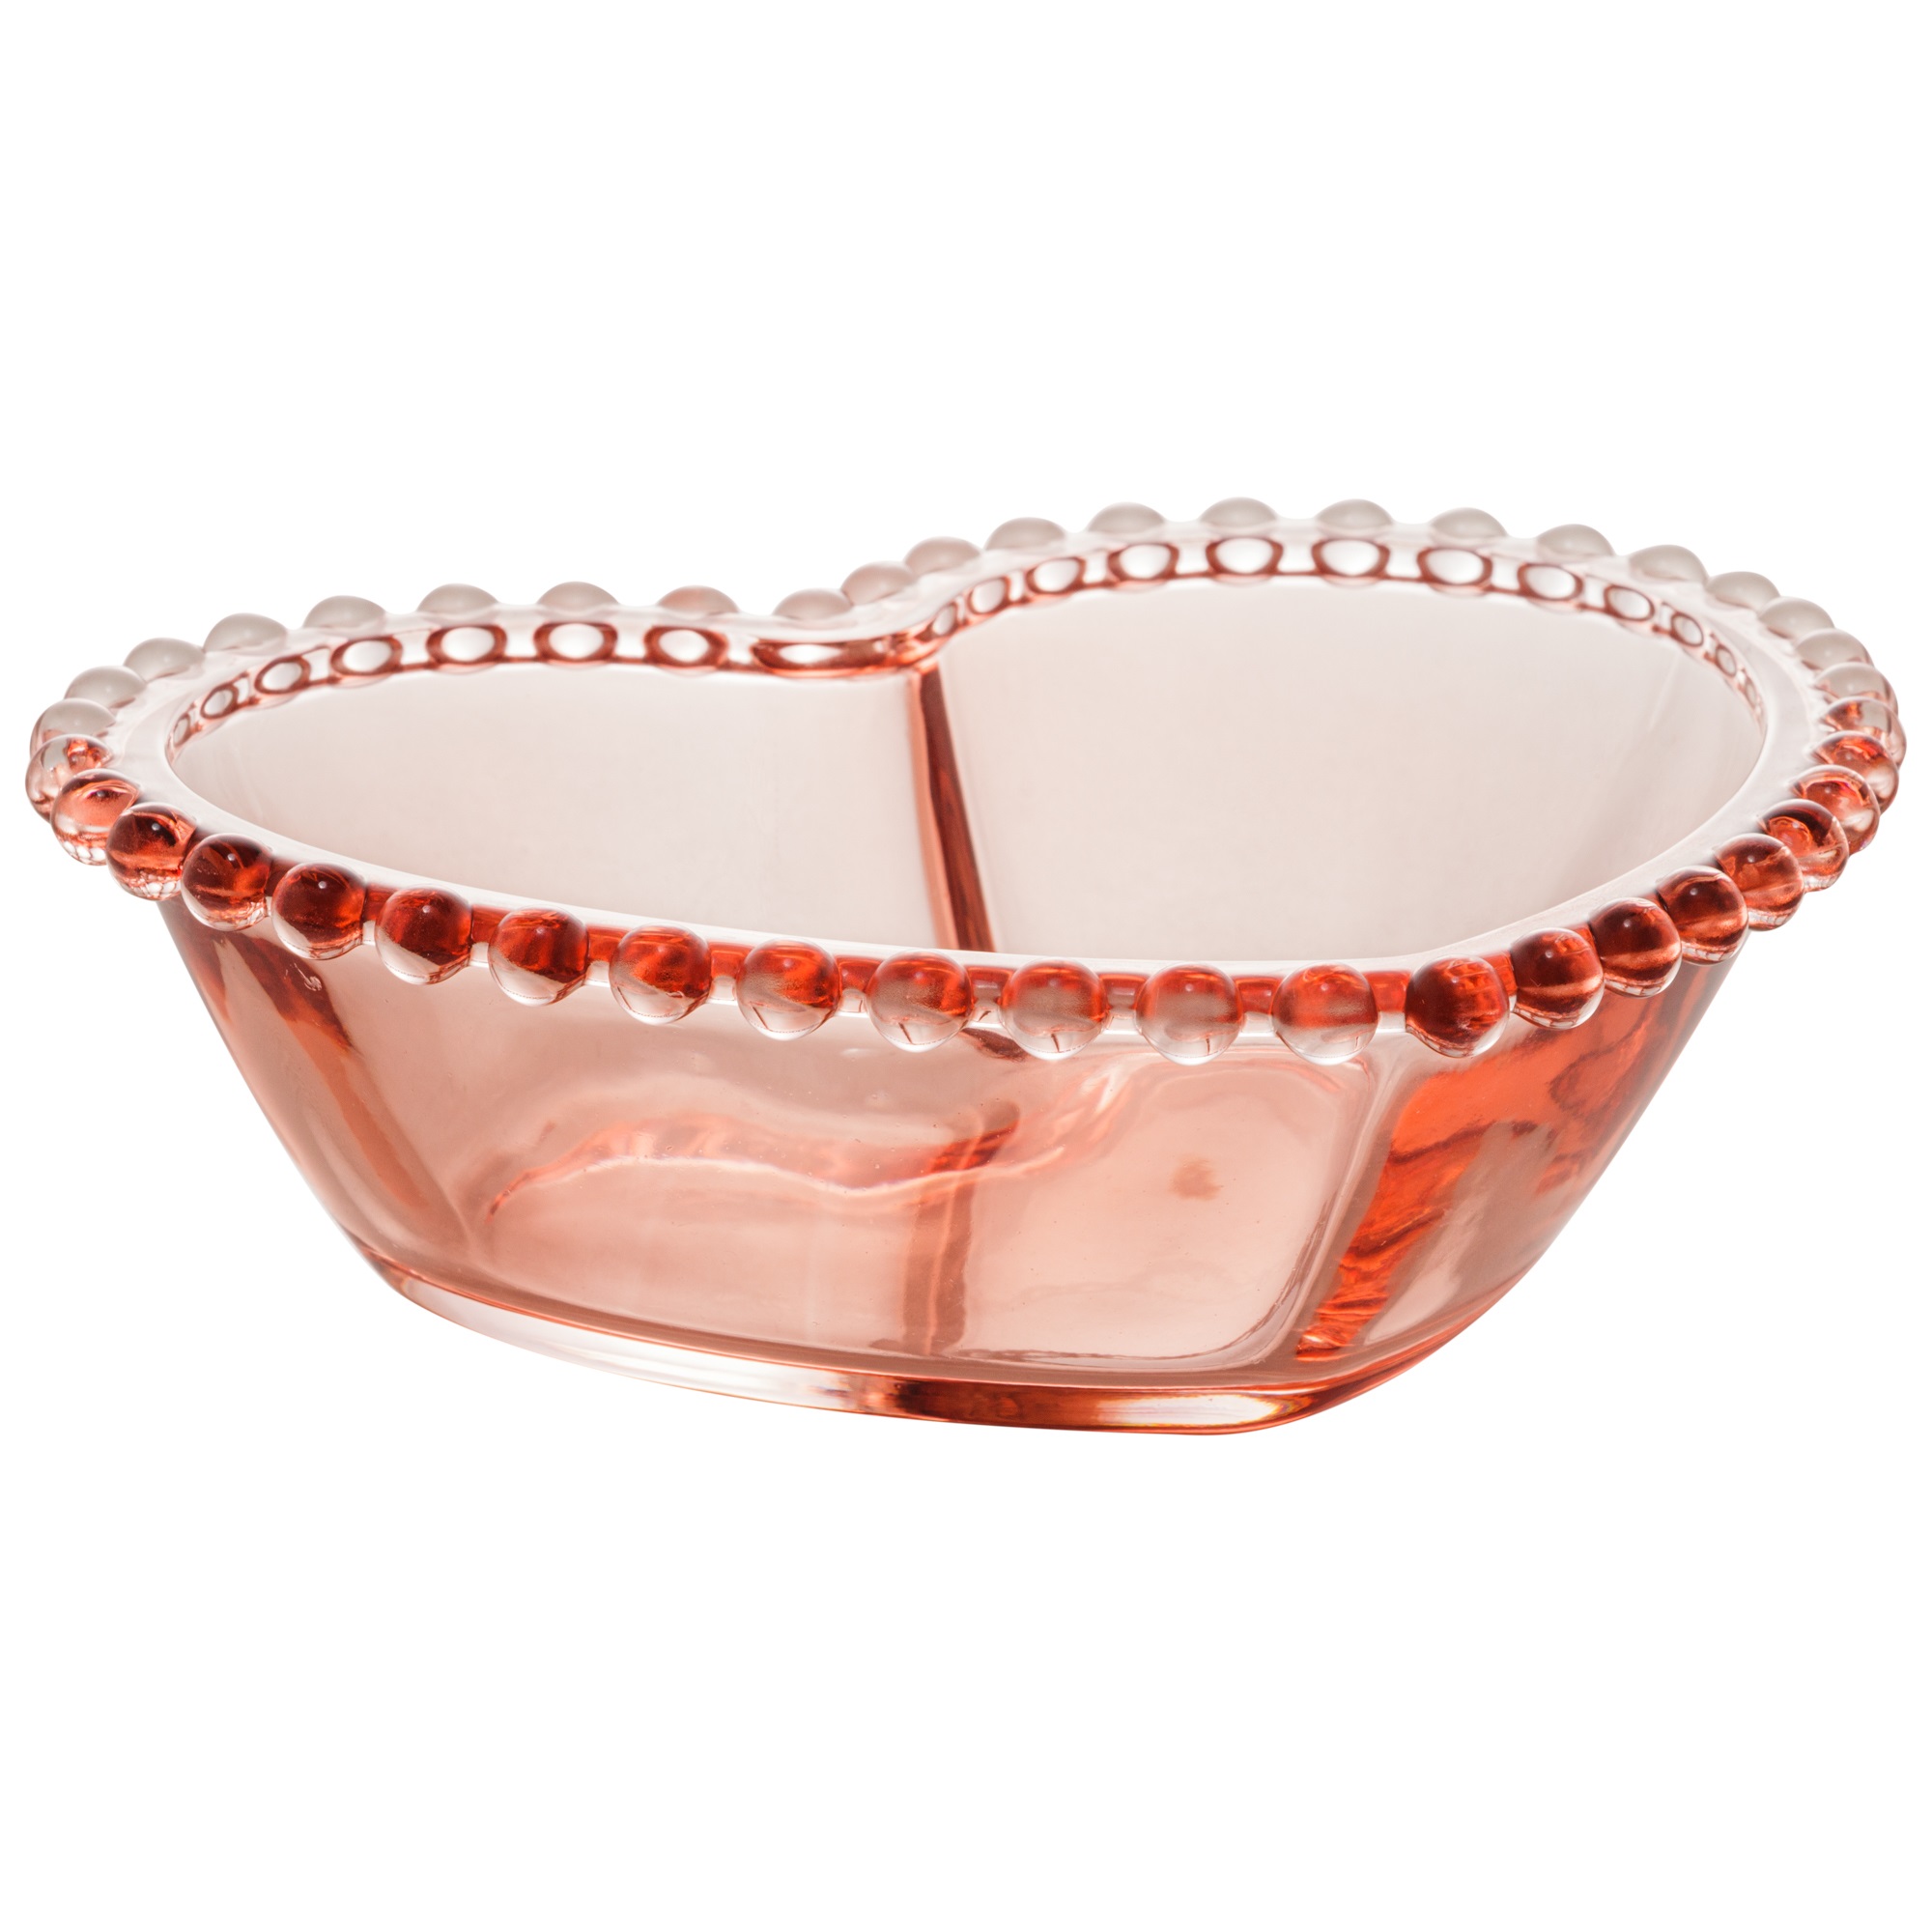 Bowl Médio de Coração em Cristal Rosa com borda de Bolinha 19x15x6cm